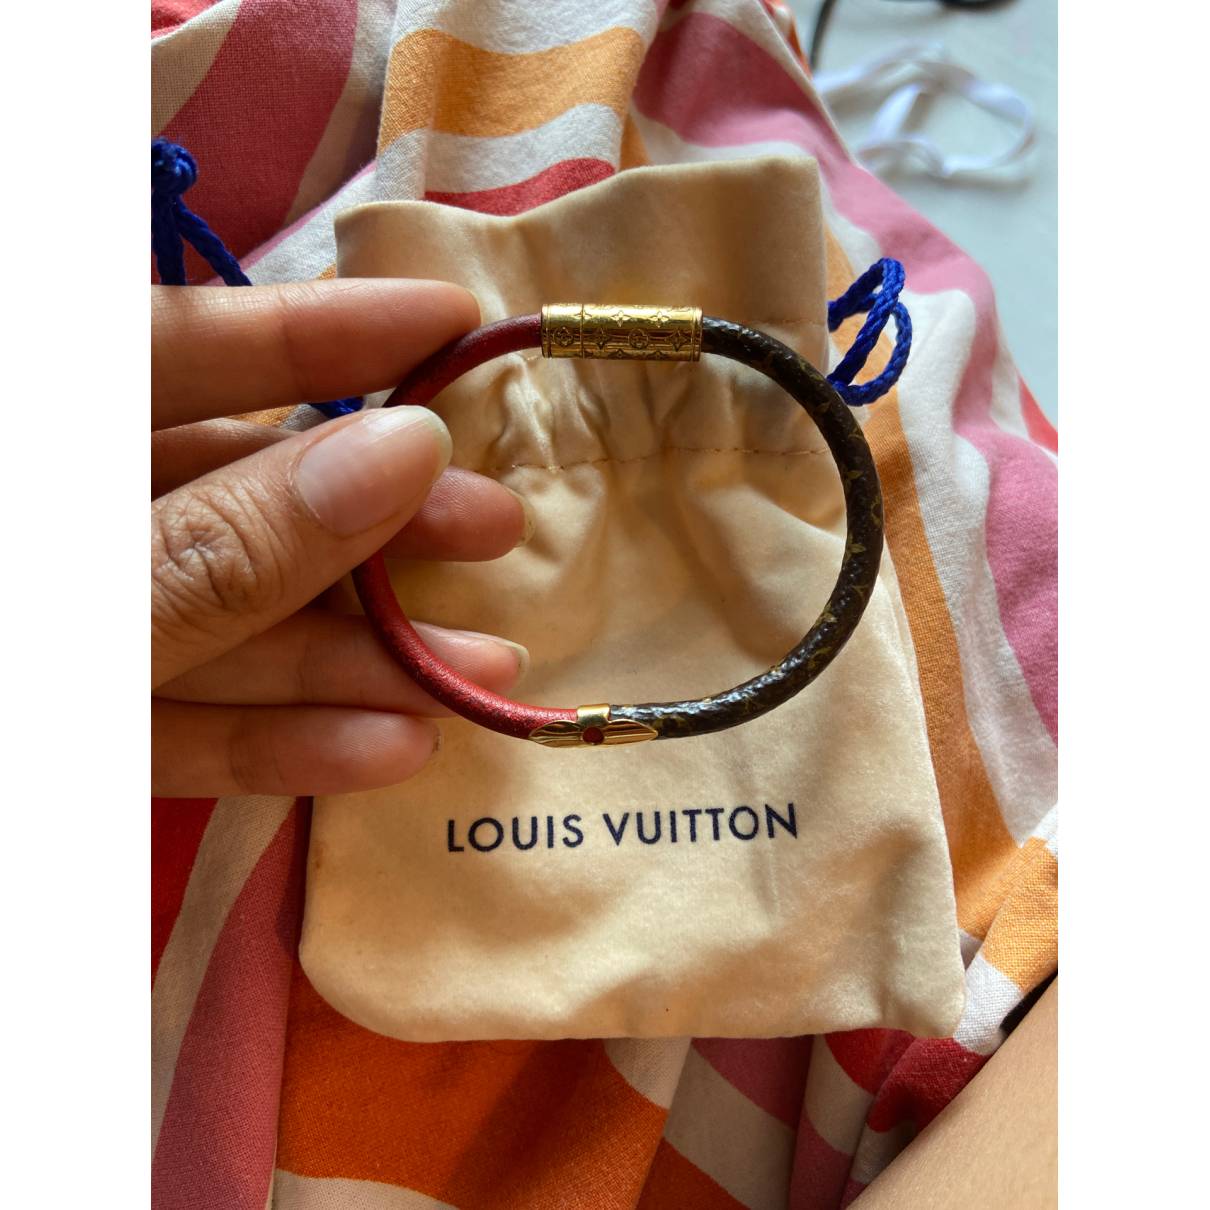 Louis Vuitton Daily Confidential Bracelet Black Monogram. Size 19